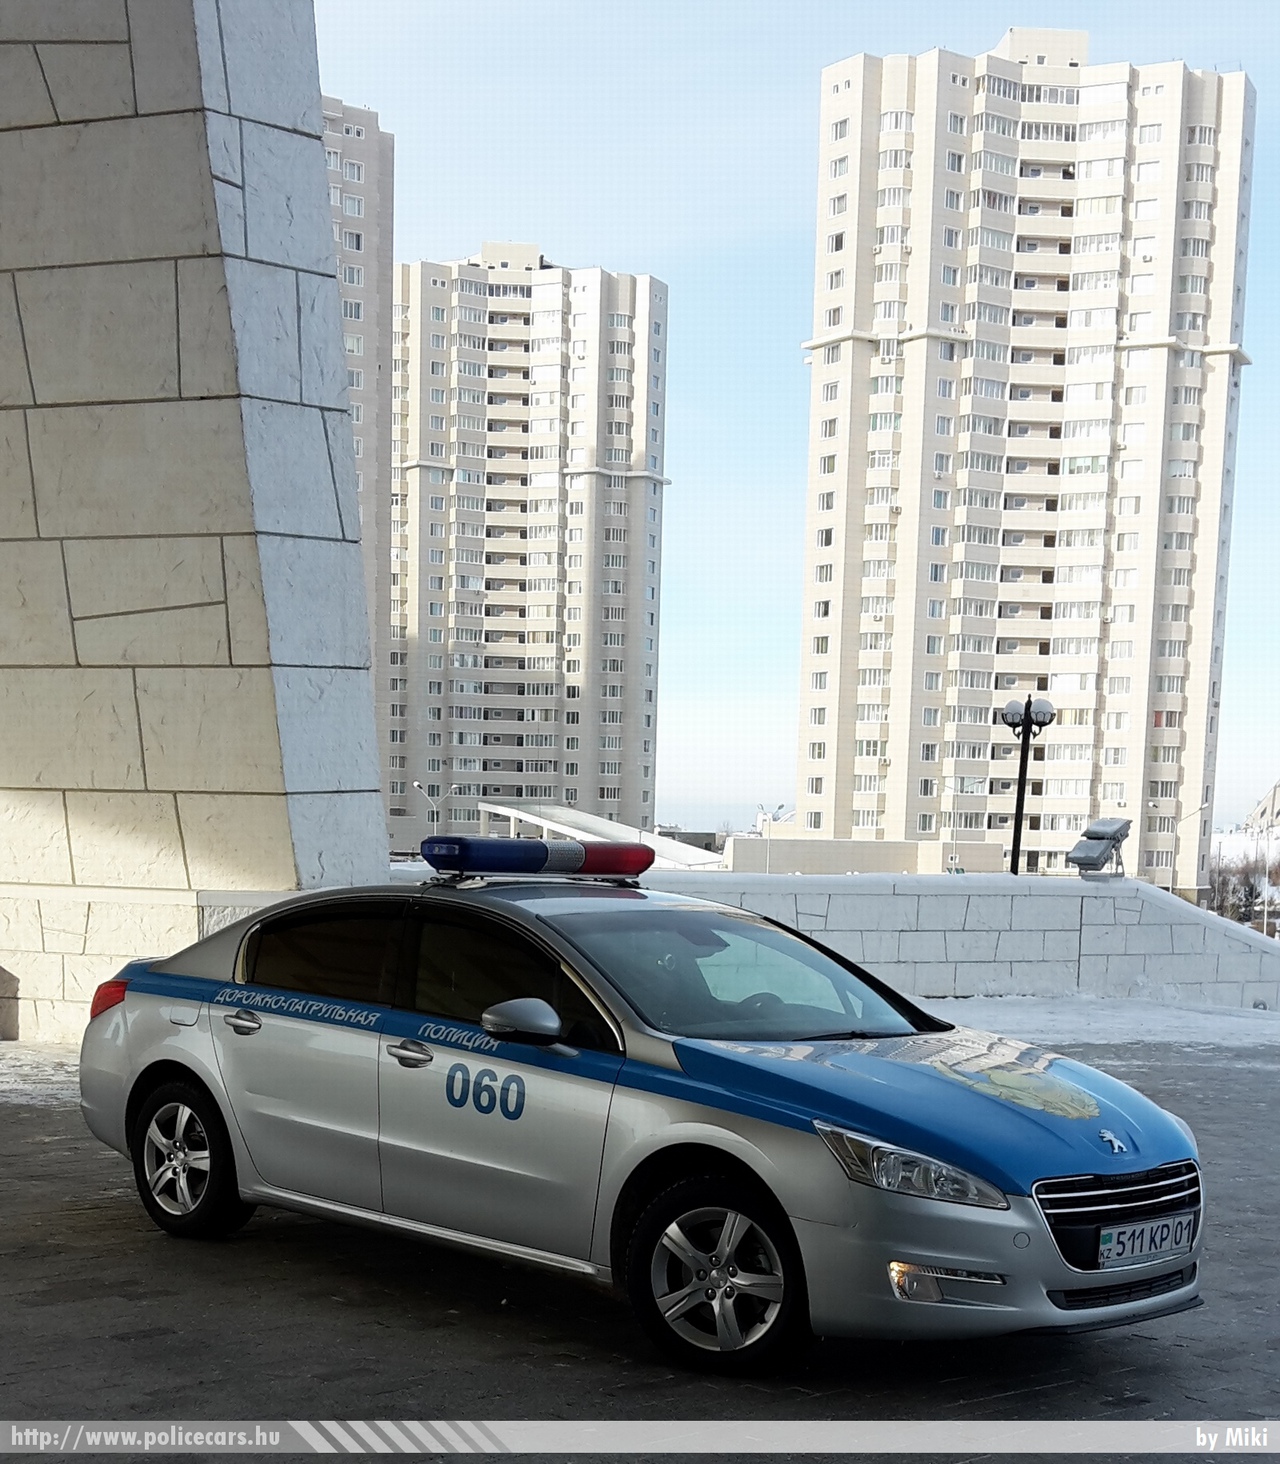 Peugeot 508, fotó: Miki
Keywords: kazah Kazahsztán rendőr rendőrautó rendőrség Kazakhstan police policecar